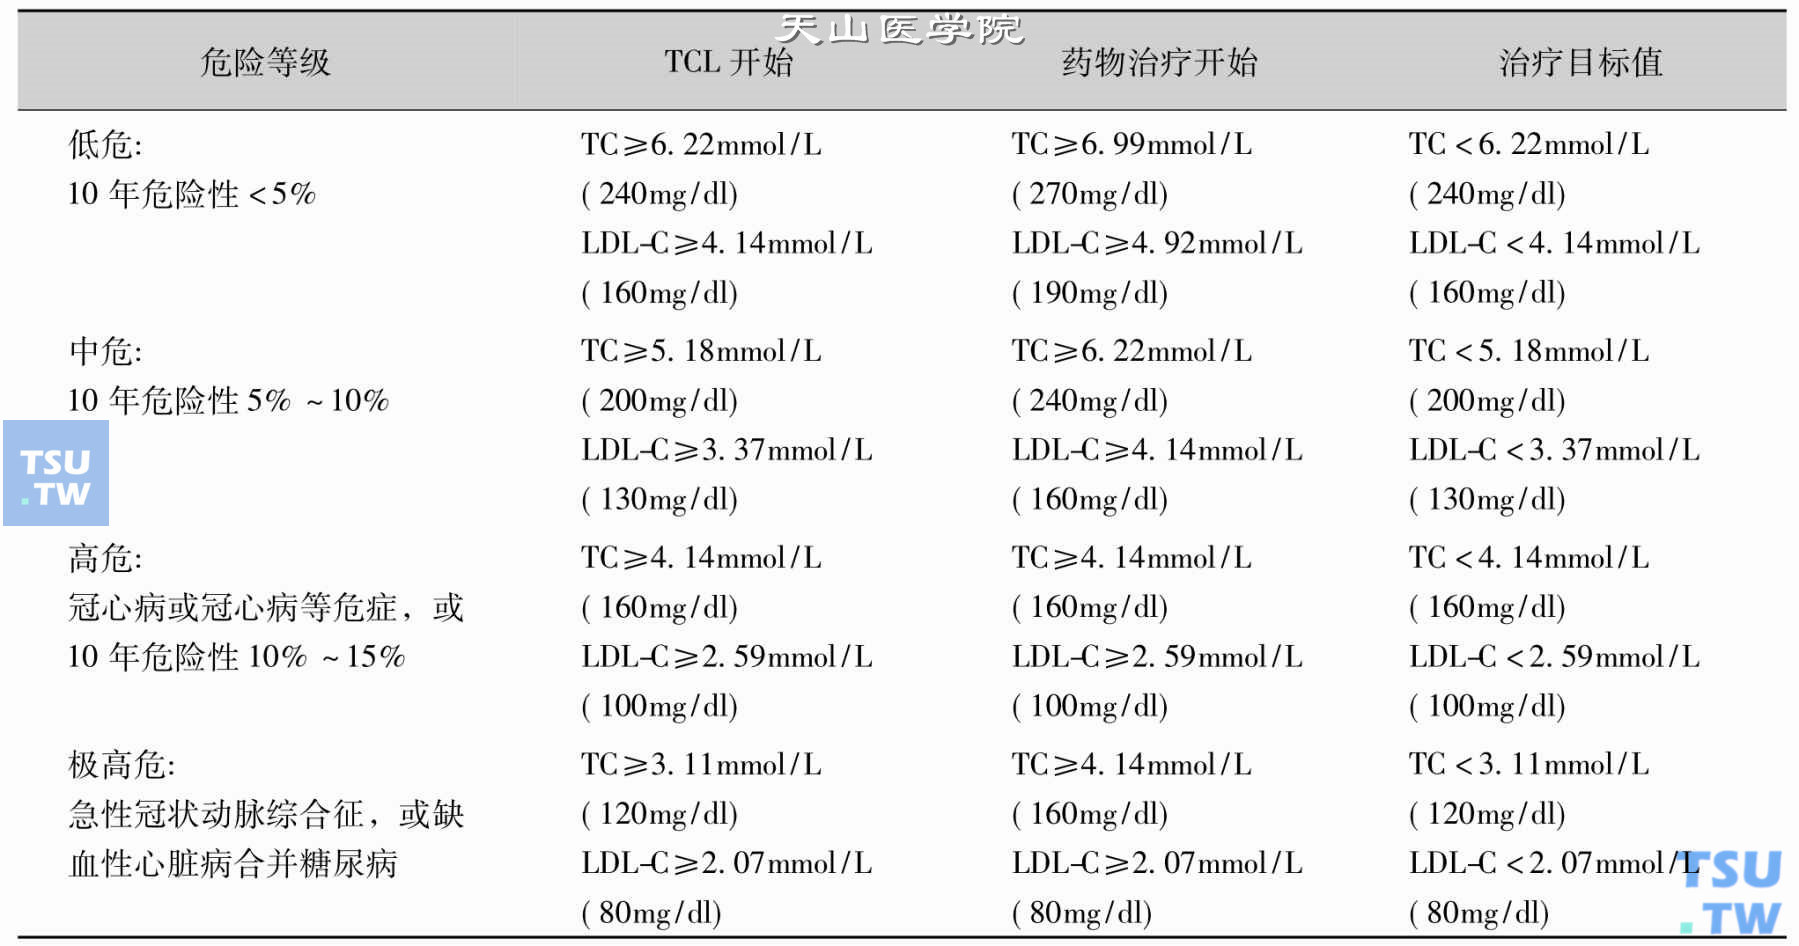 血脂异常患者开始调脂治疗的血清TC和LDL-C值及目标值；注：TLC：富含TG的脂蛋白